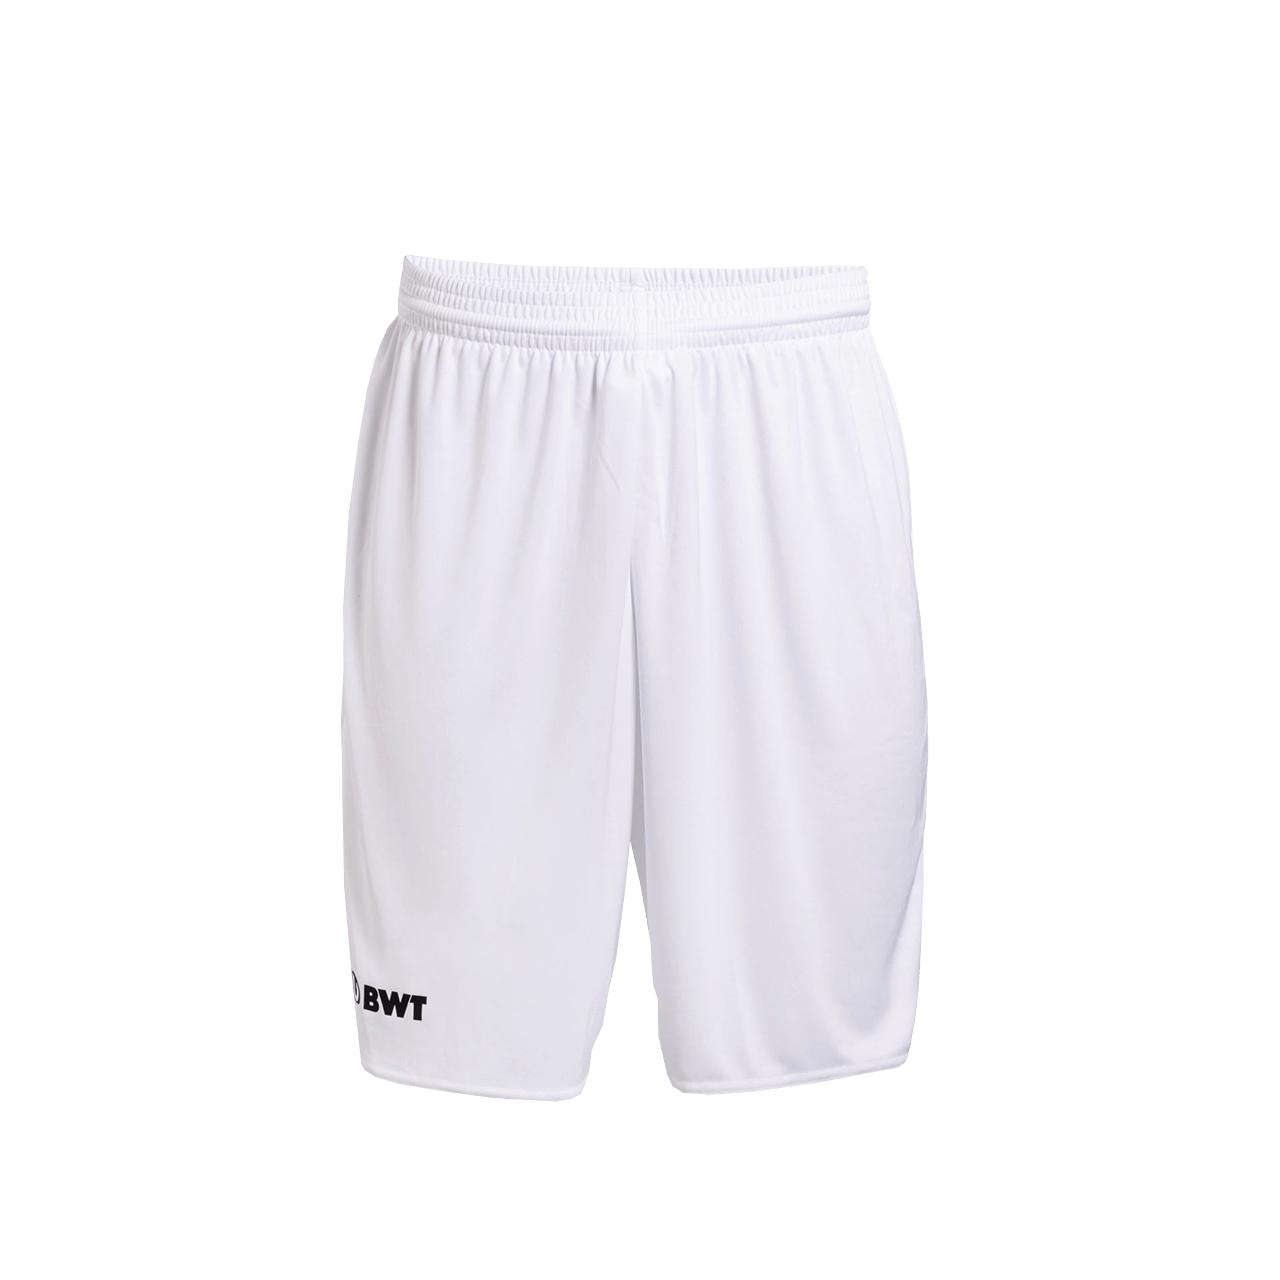 BWT One Training Shorts white with BWT logo black on right leg